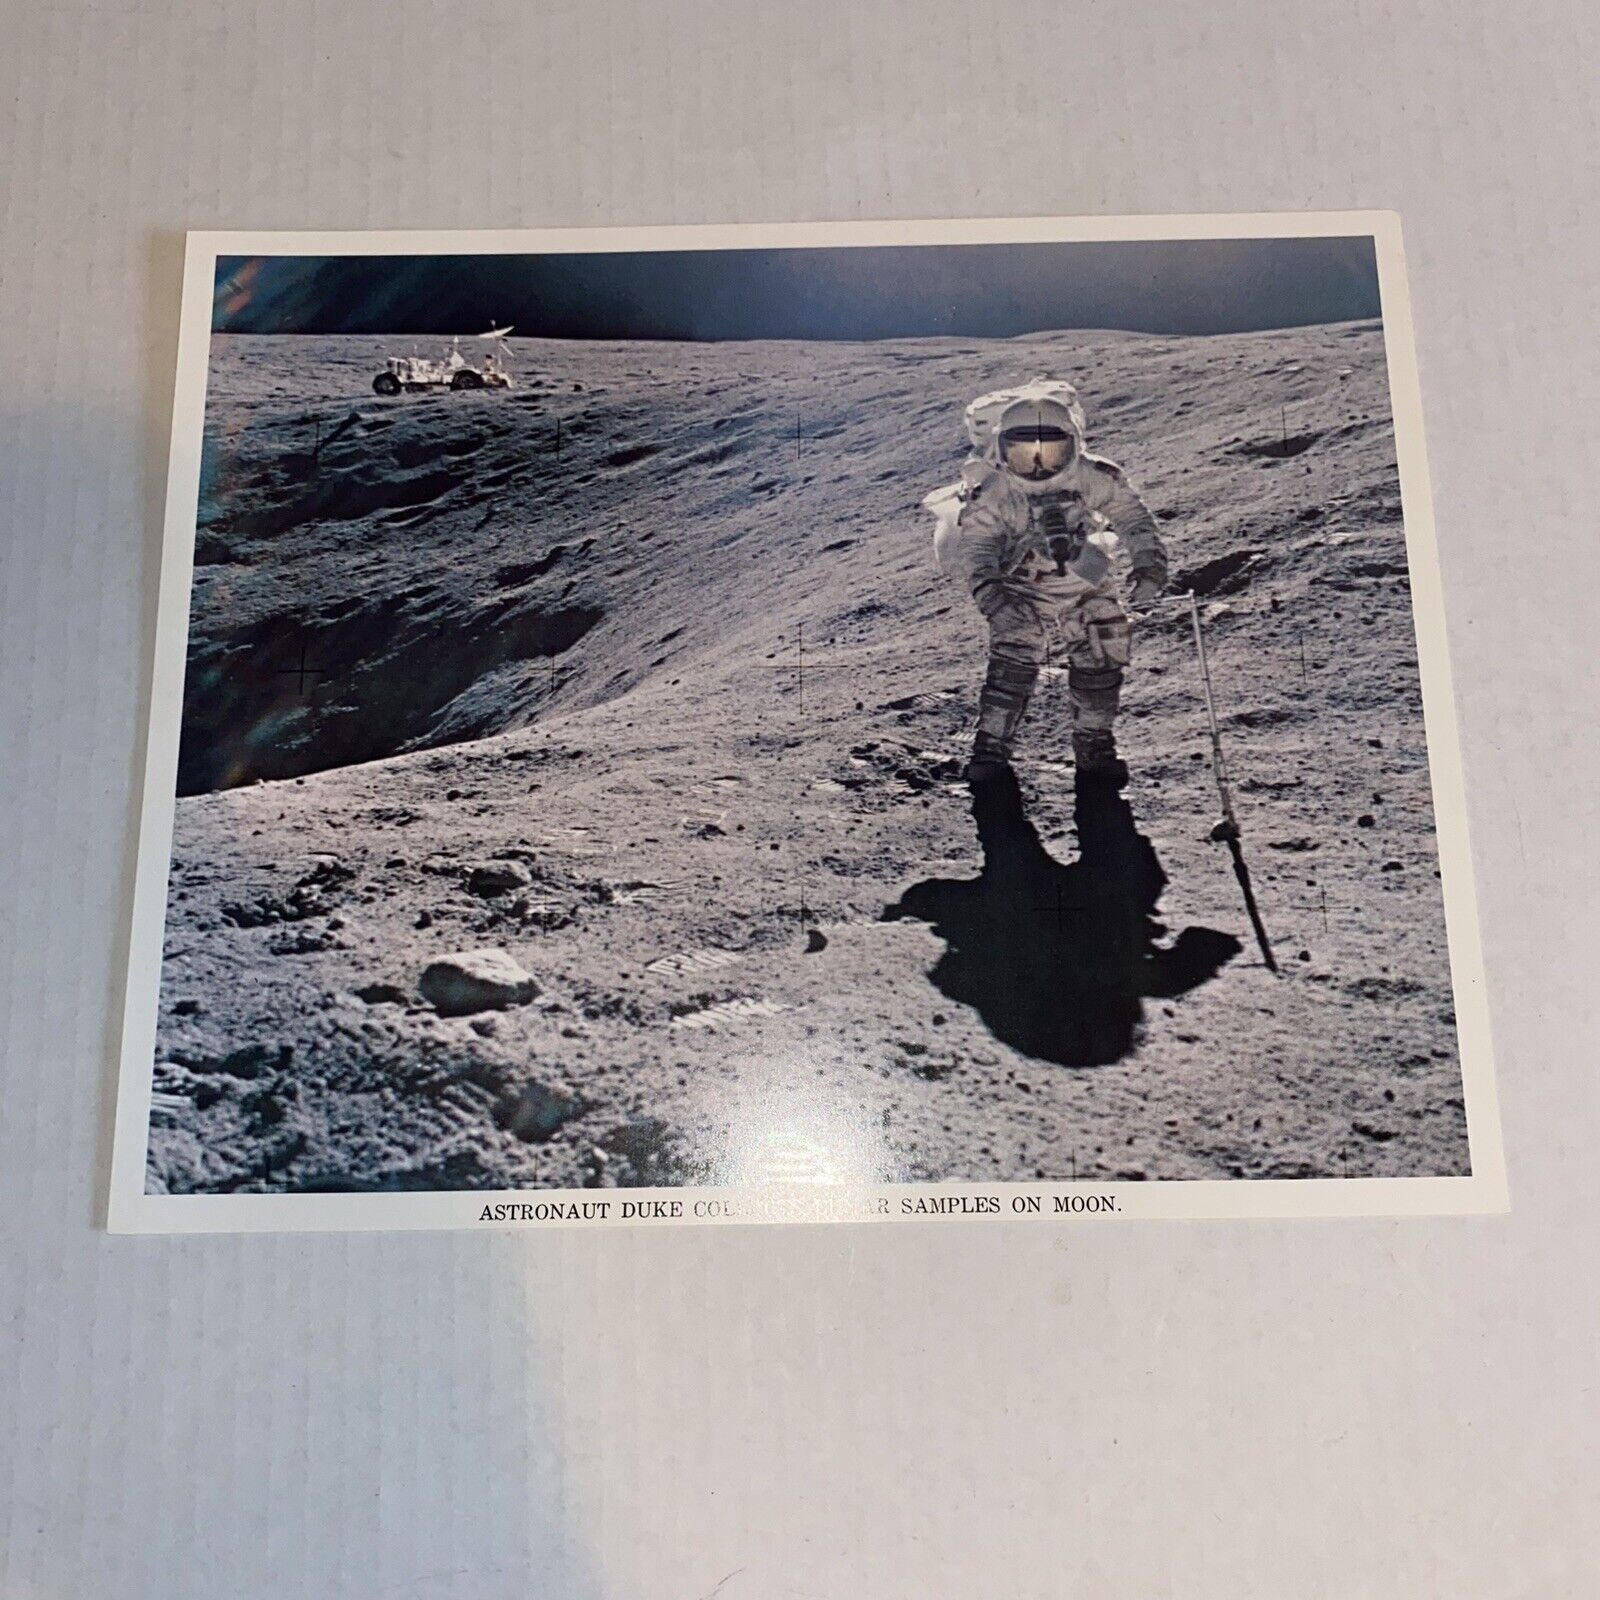 Apollo 16 Lunar Rover on the Moon Photo Astronaut Duke Collecting Lunar Samples